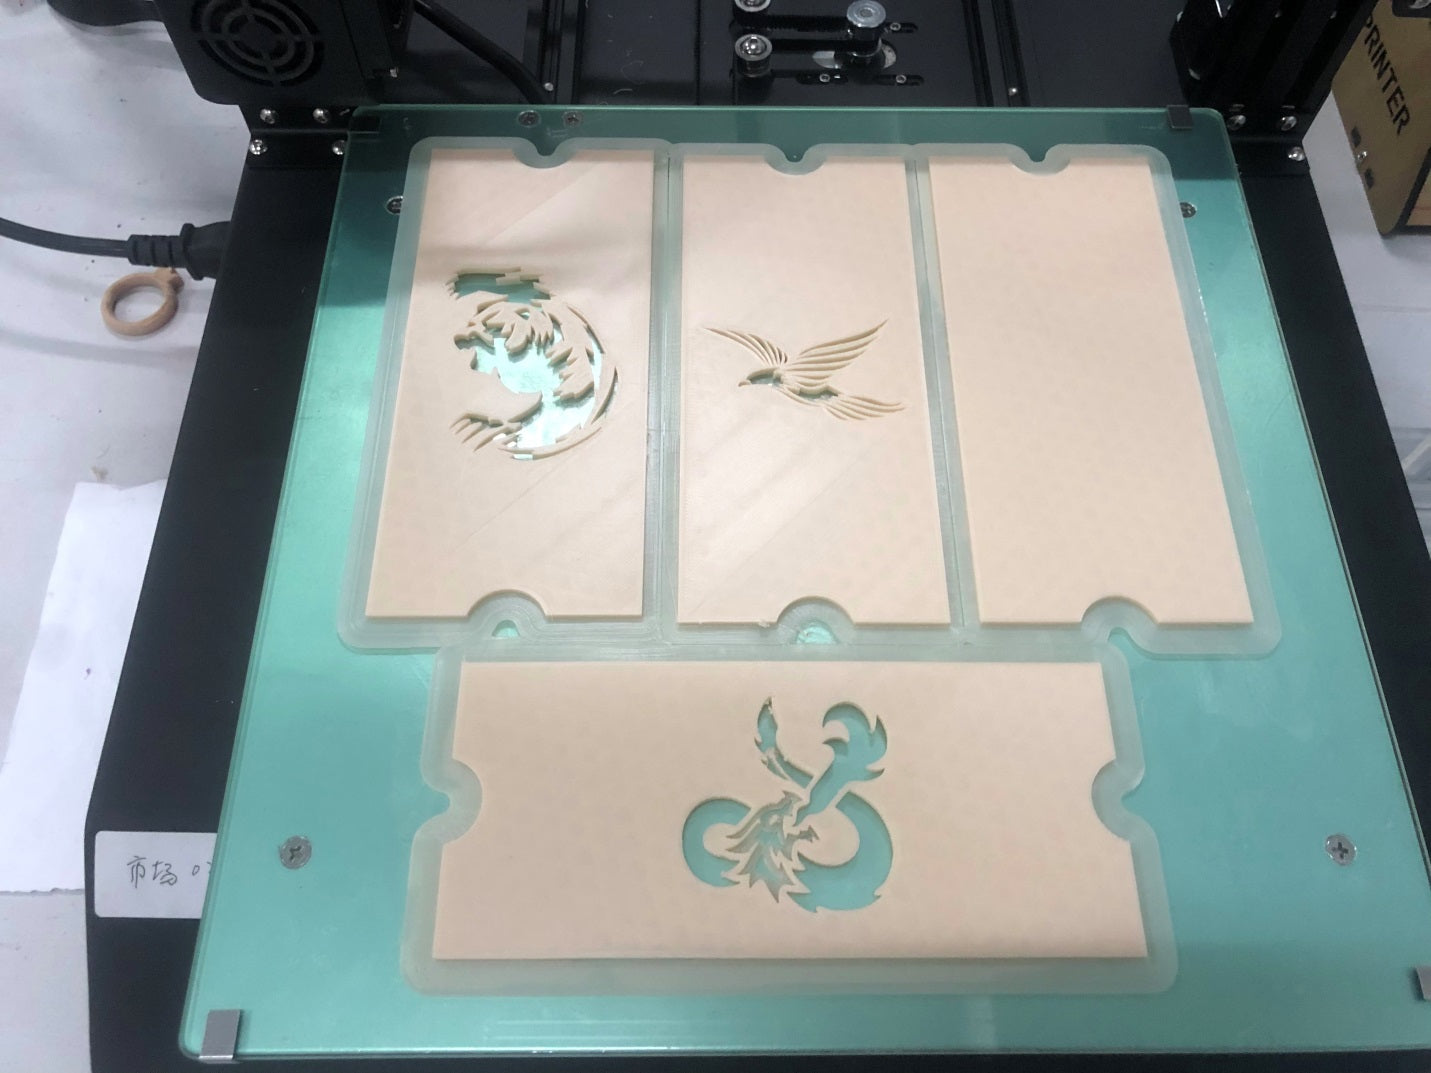 Anet ET5 3D printer is printing tea dish parts at Brim adhesion type.